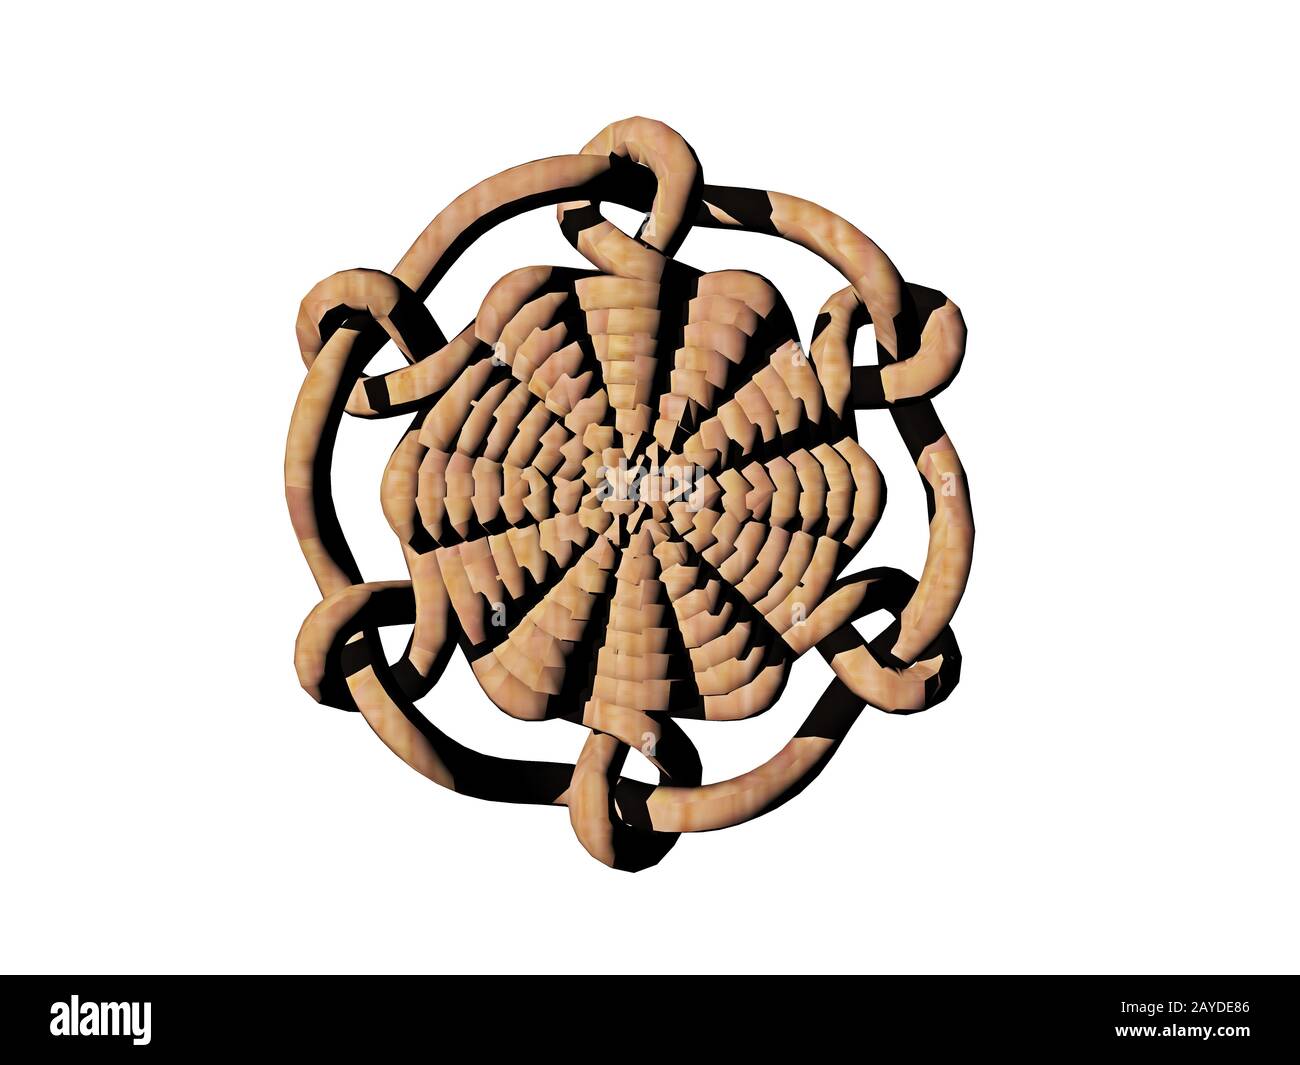 round knot pattern Stock Photo